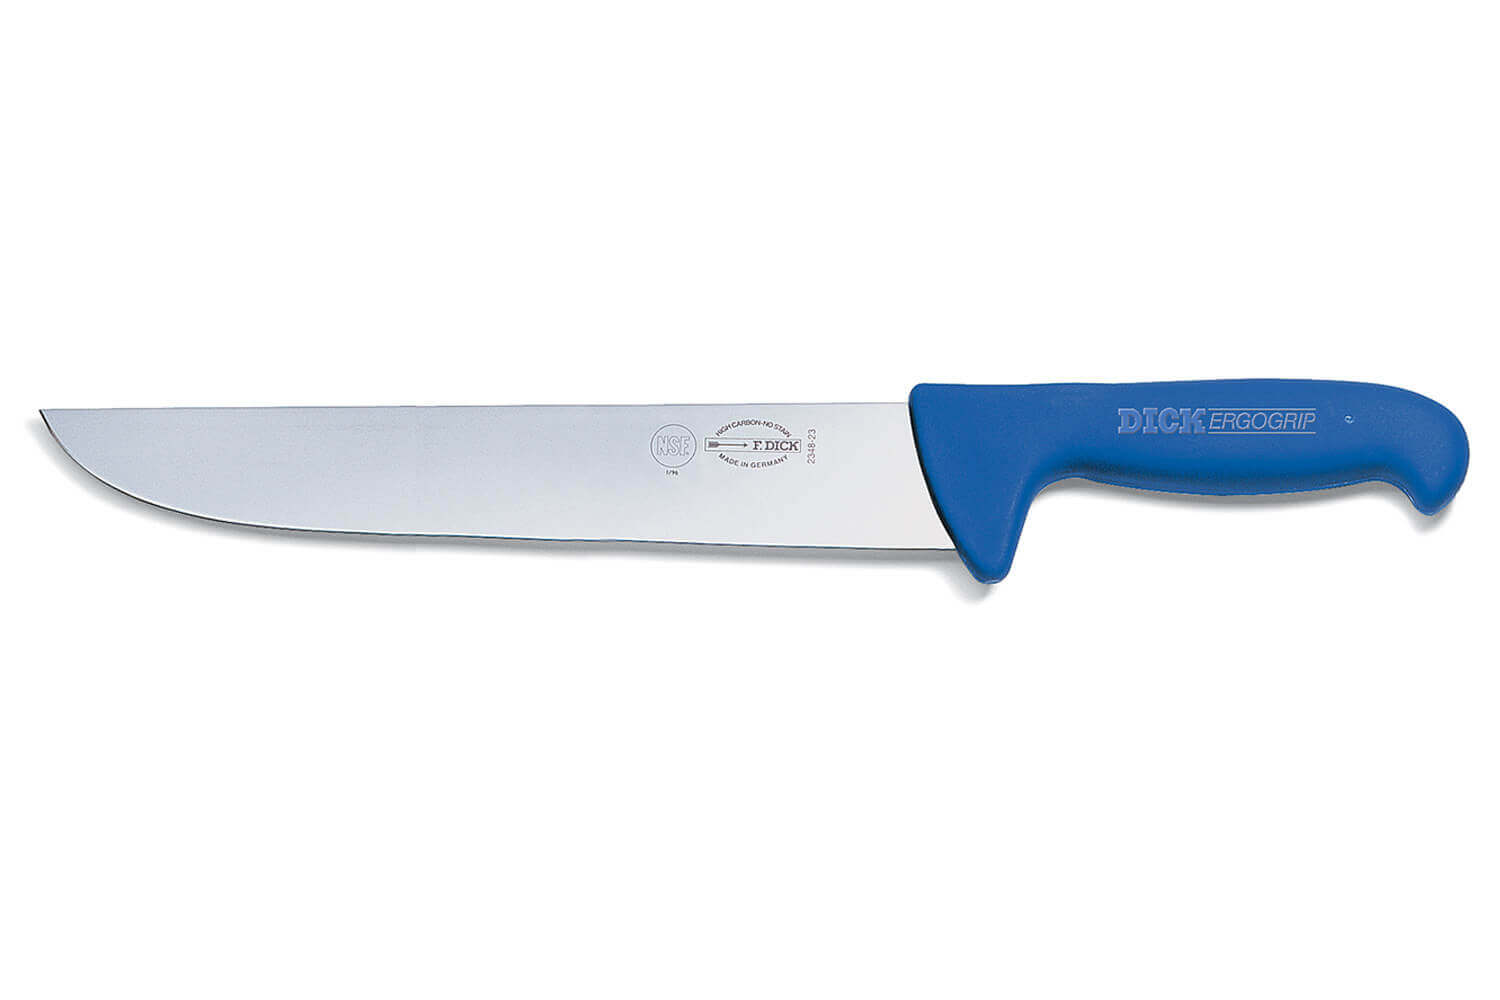 Couteau avec lame de scie avec ustensile de cuisine manche bleu